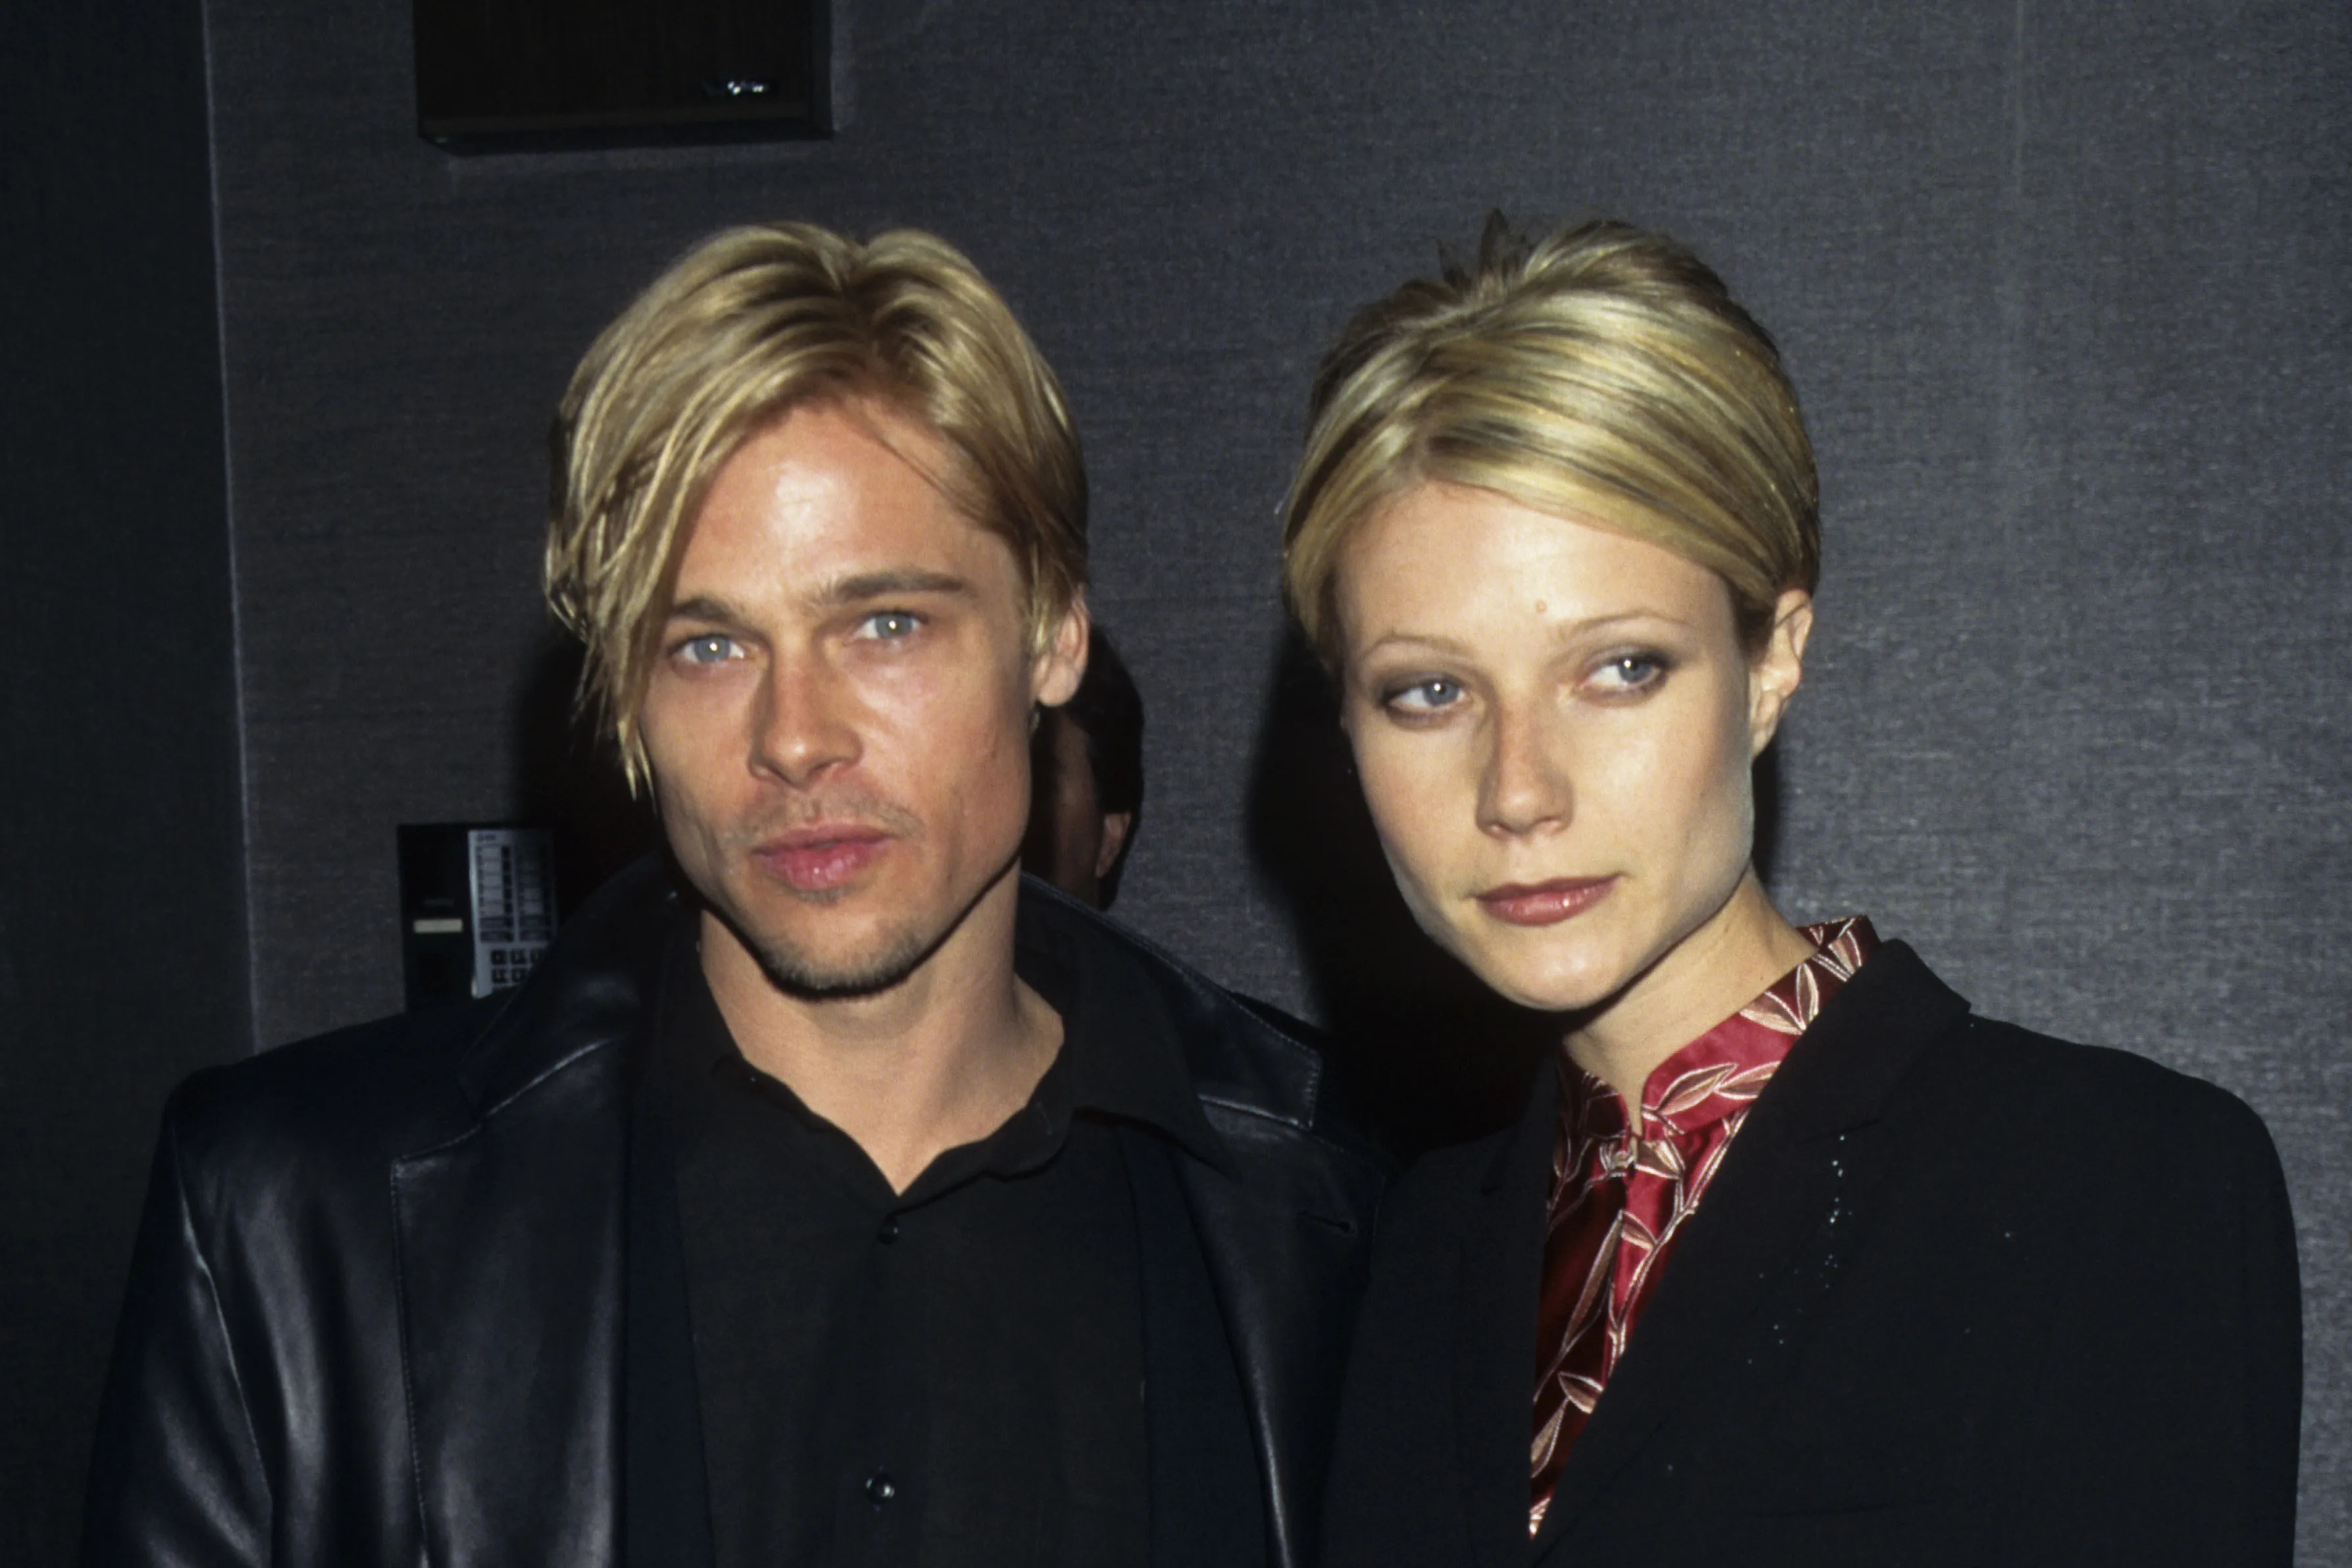 La historia de por qué Gwyneth Paltrow y Brad Pitt llevaron el mismo peinado